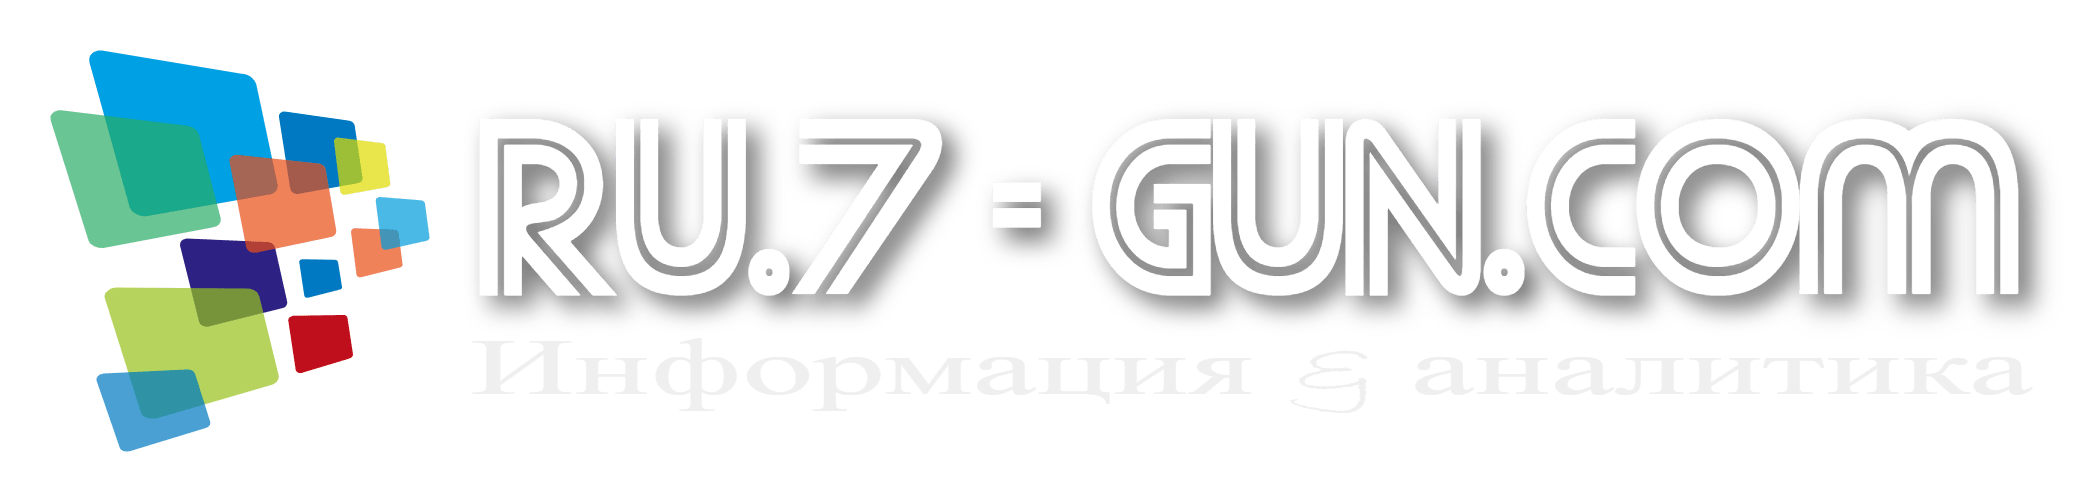 ru.7-gun.com